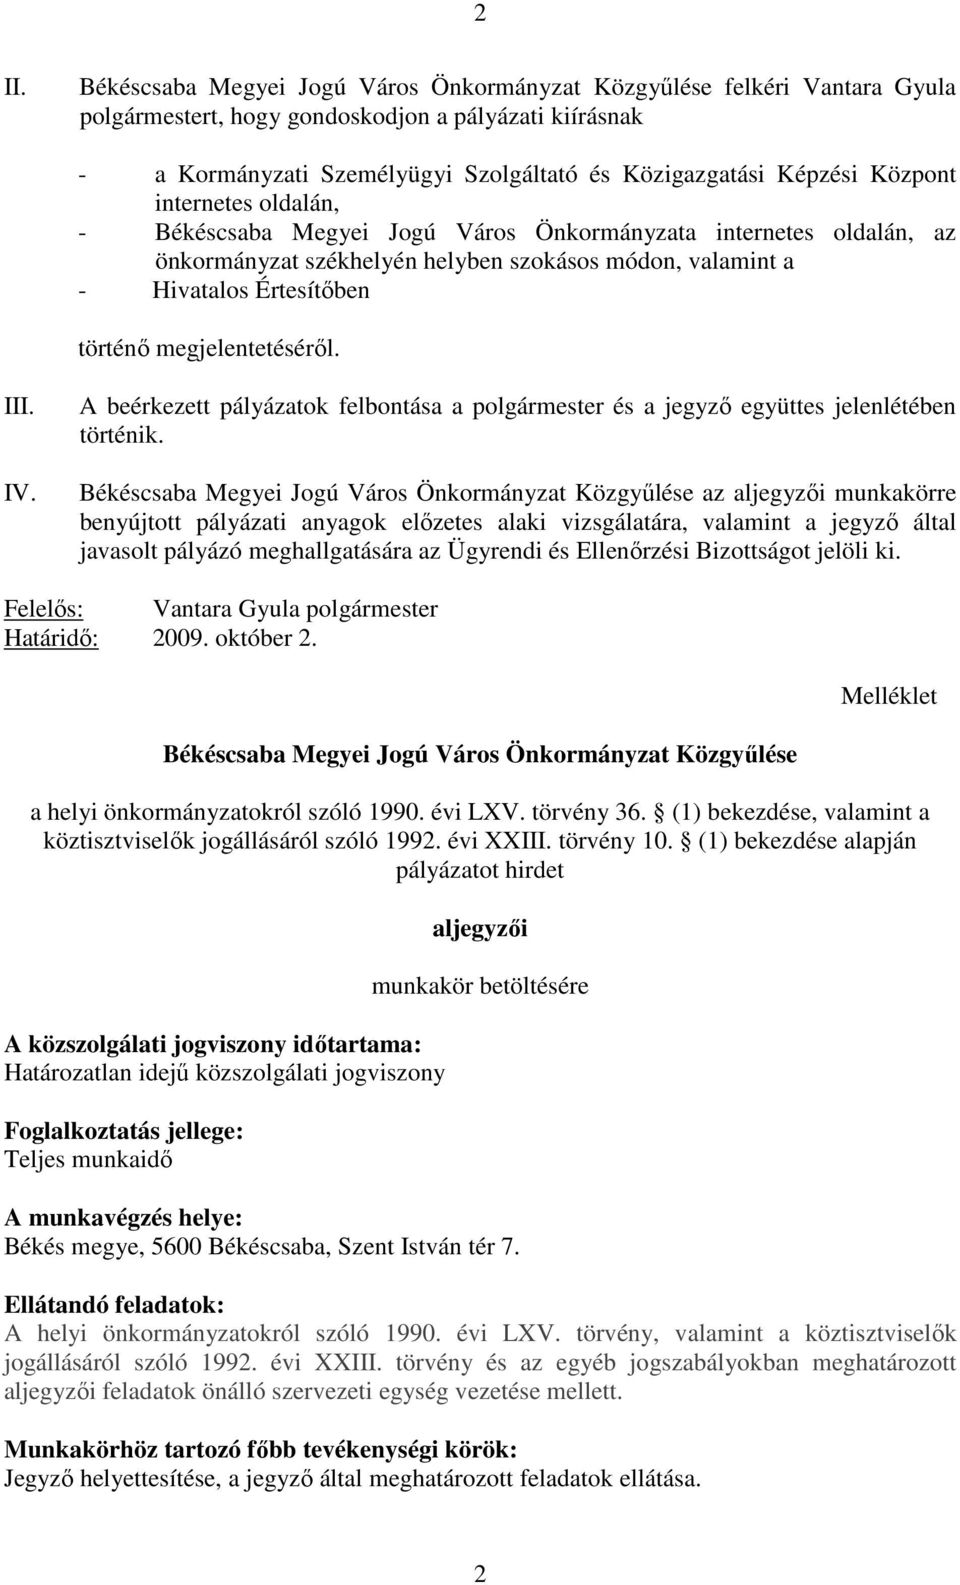 megjelentetésérıl. III. IV. A beérkezett pályázatok felbontása a polgármester és a jegyzı együttes jelenlétében történik.